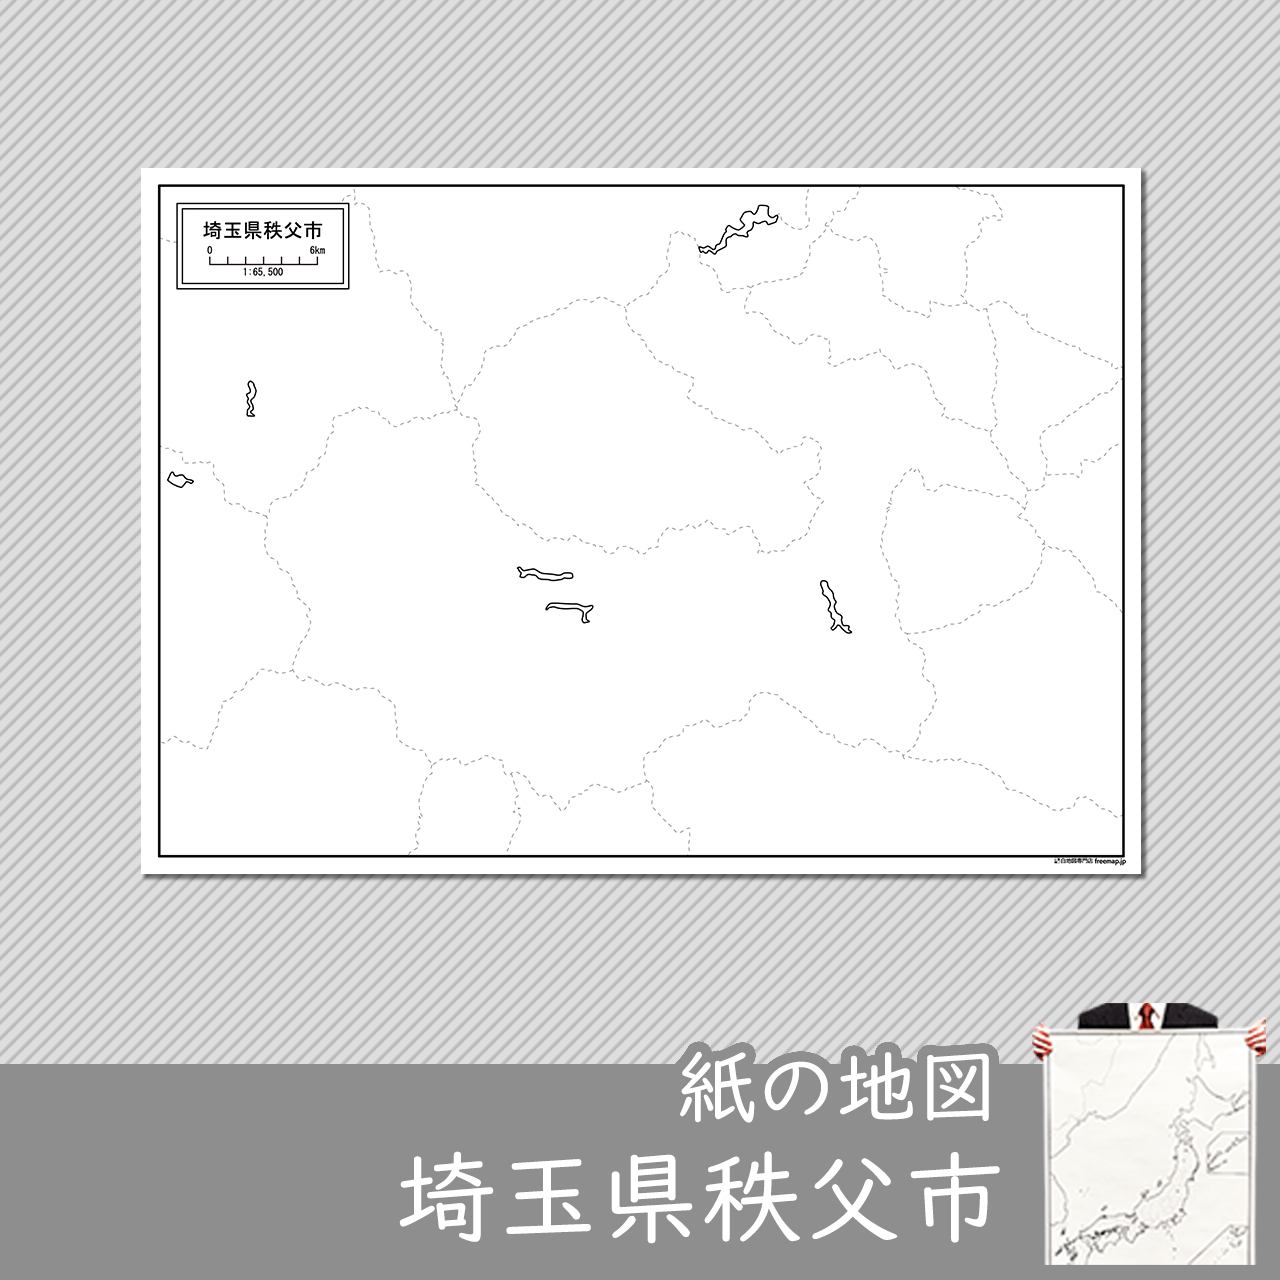 秩父市の紙の白地図のサムネイル